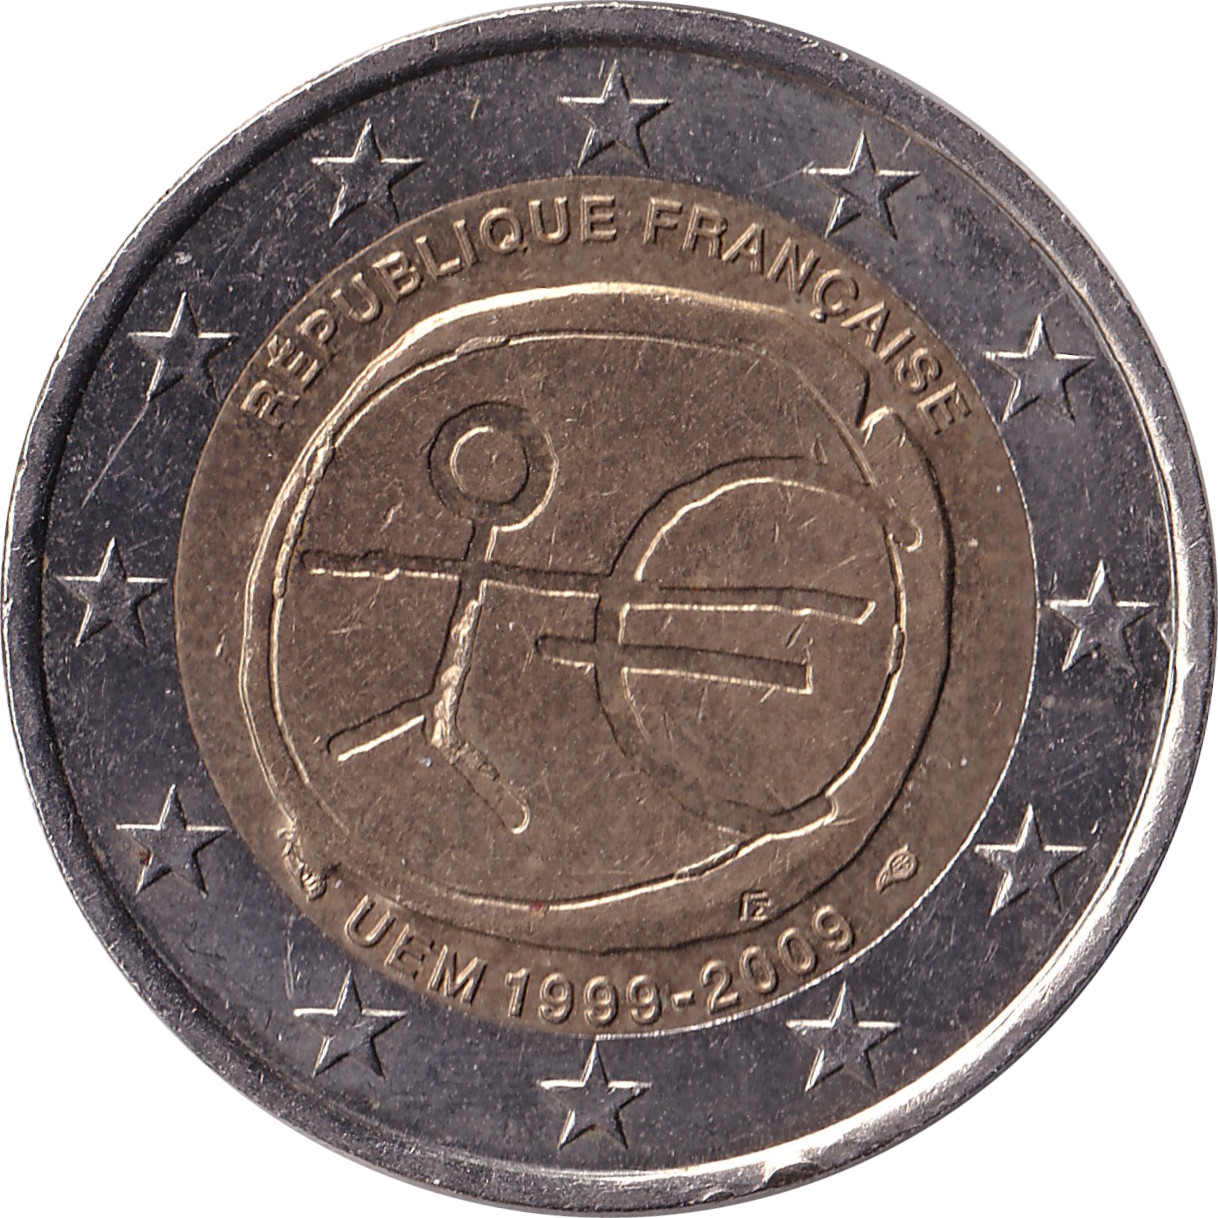 2 euro - Union Économique Monétaire